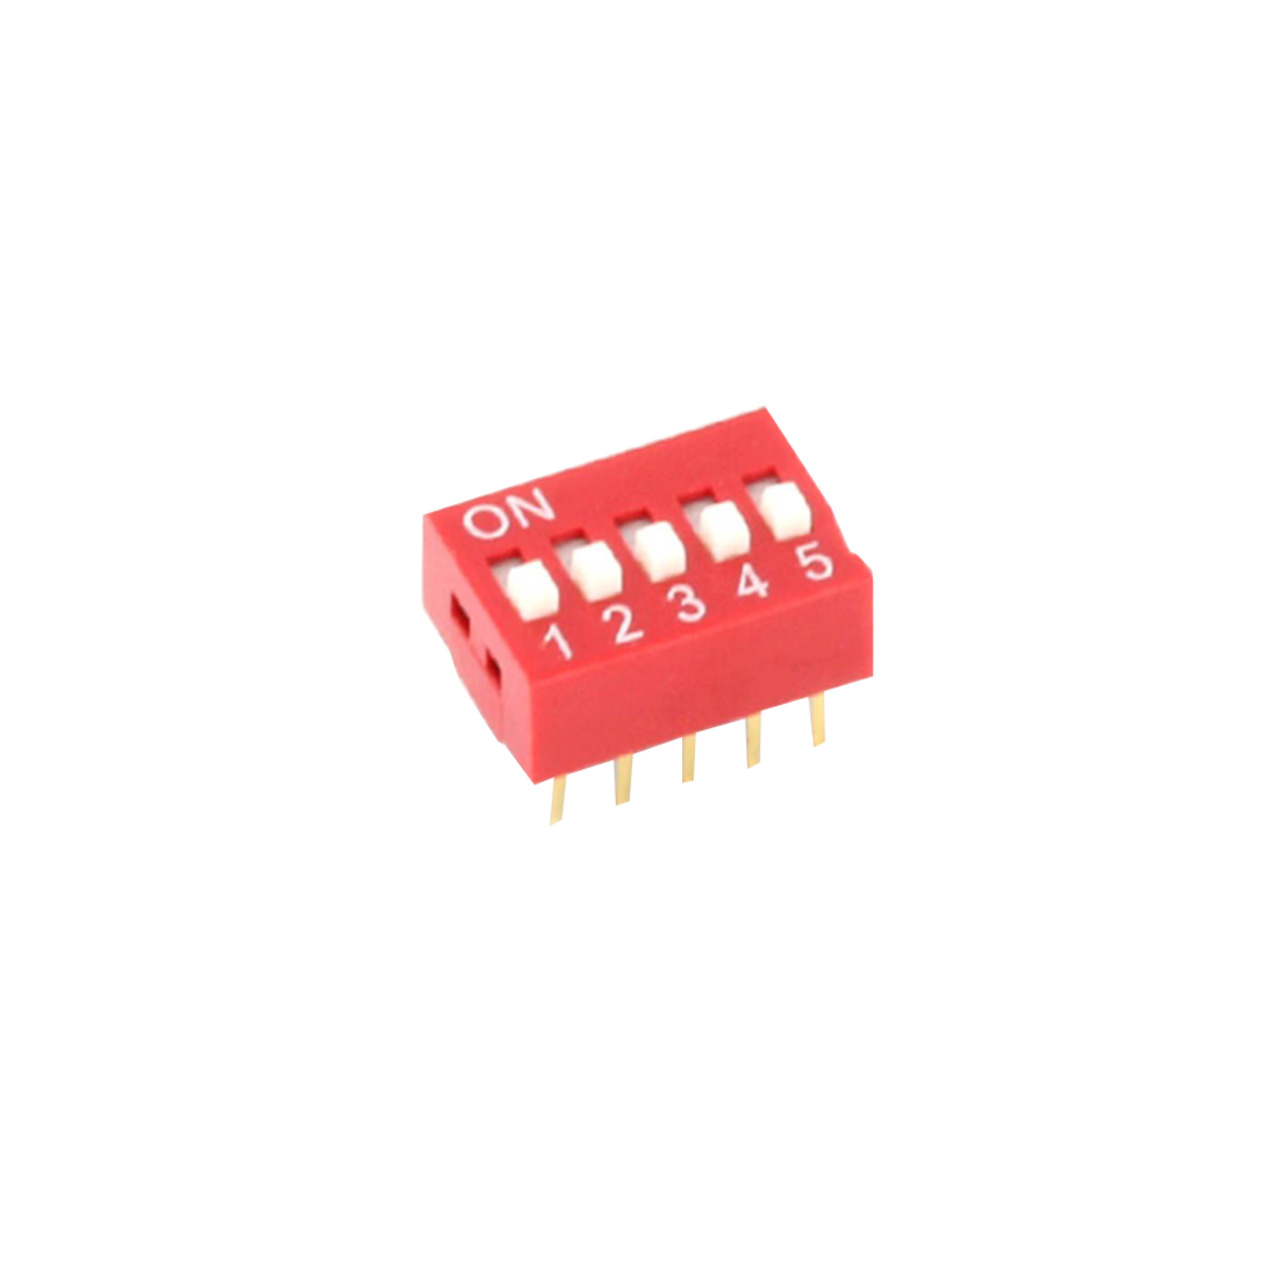 DIP-Schalter RM2-54 5-pol unter Komponenten